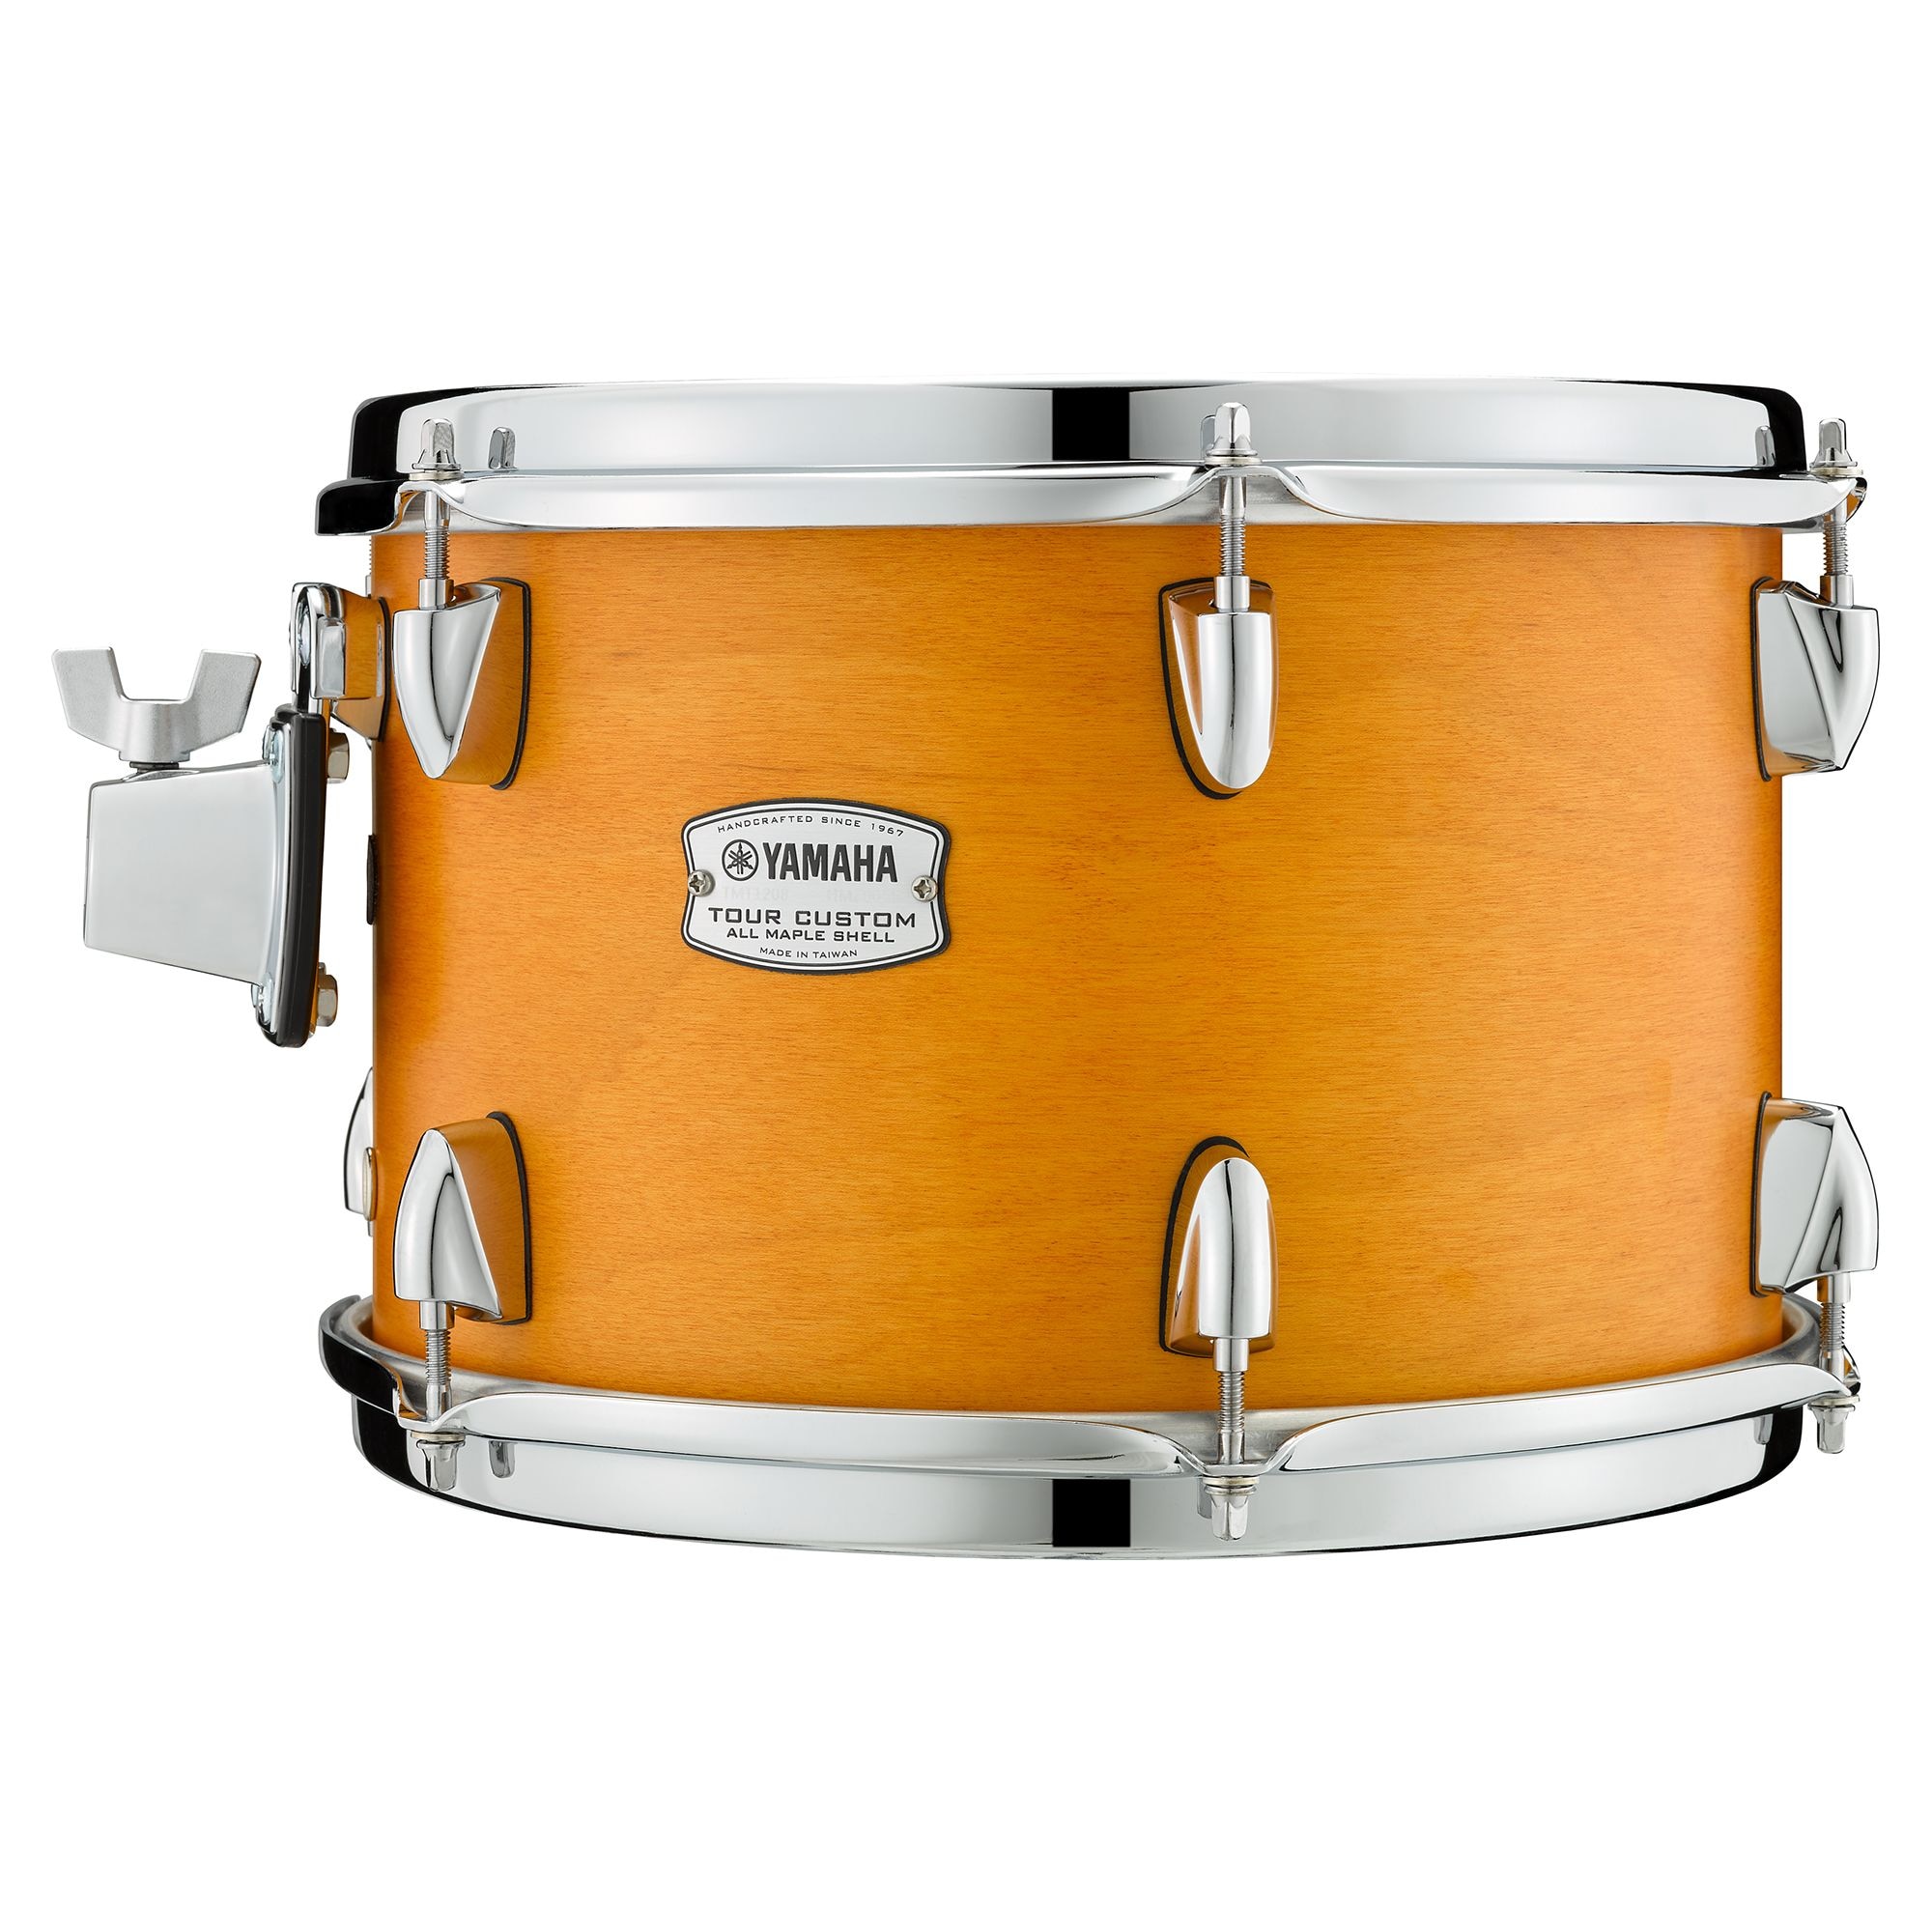 Tour Custom Drum Kit - Features - Drum Sets - Acoustic Drums